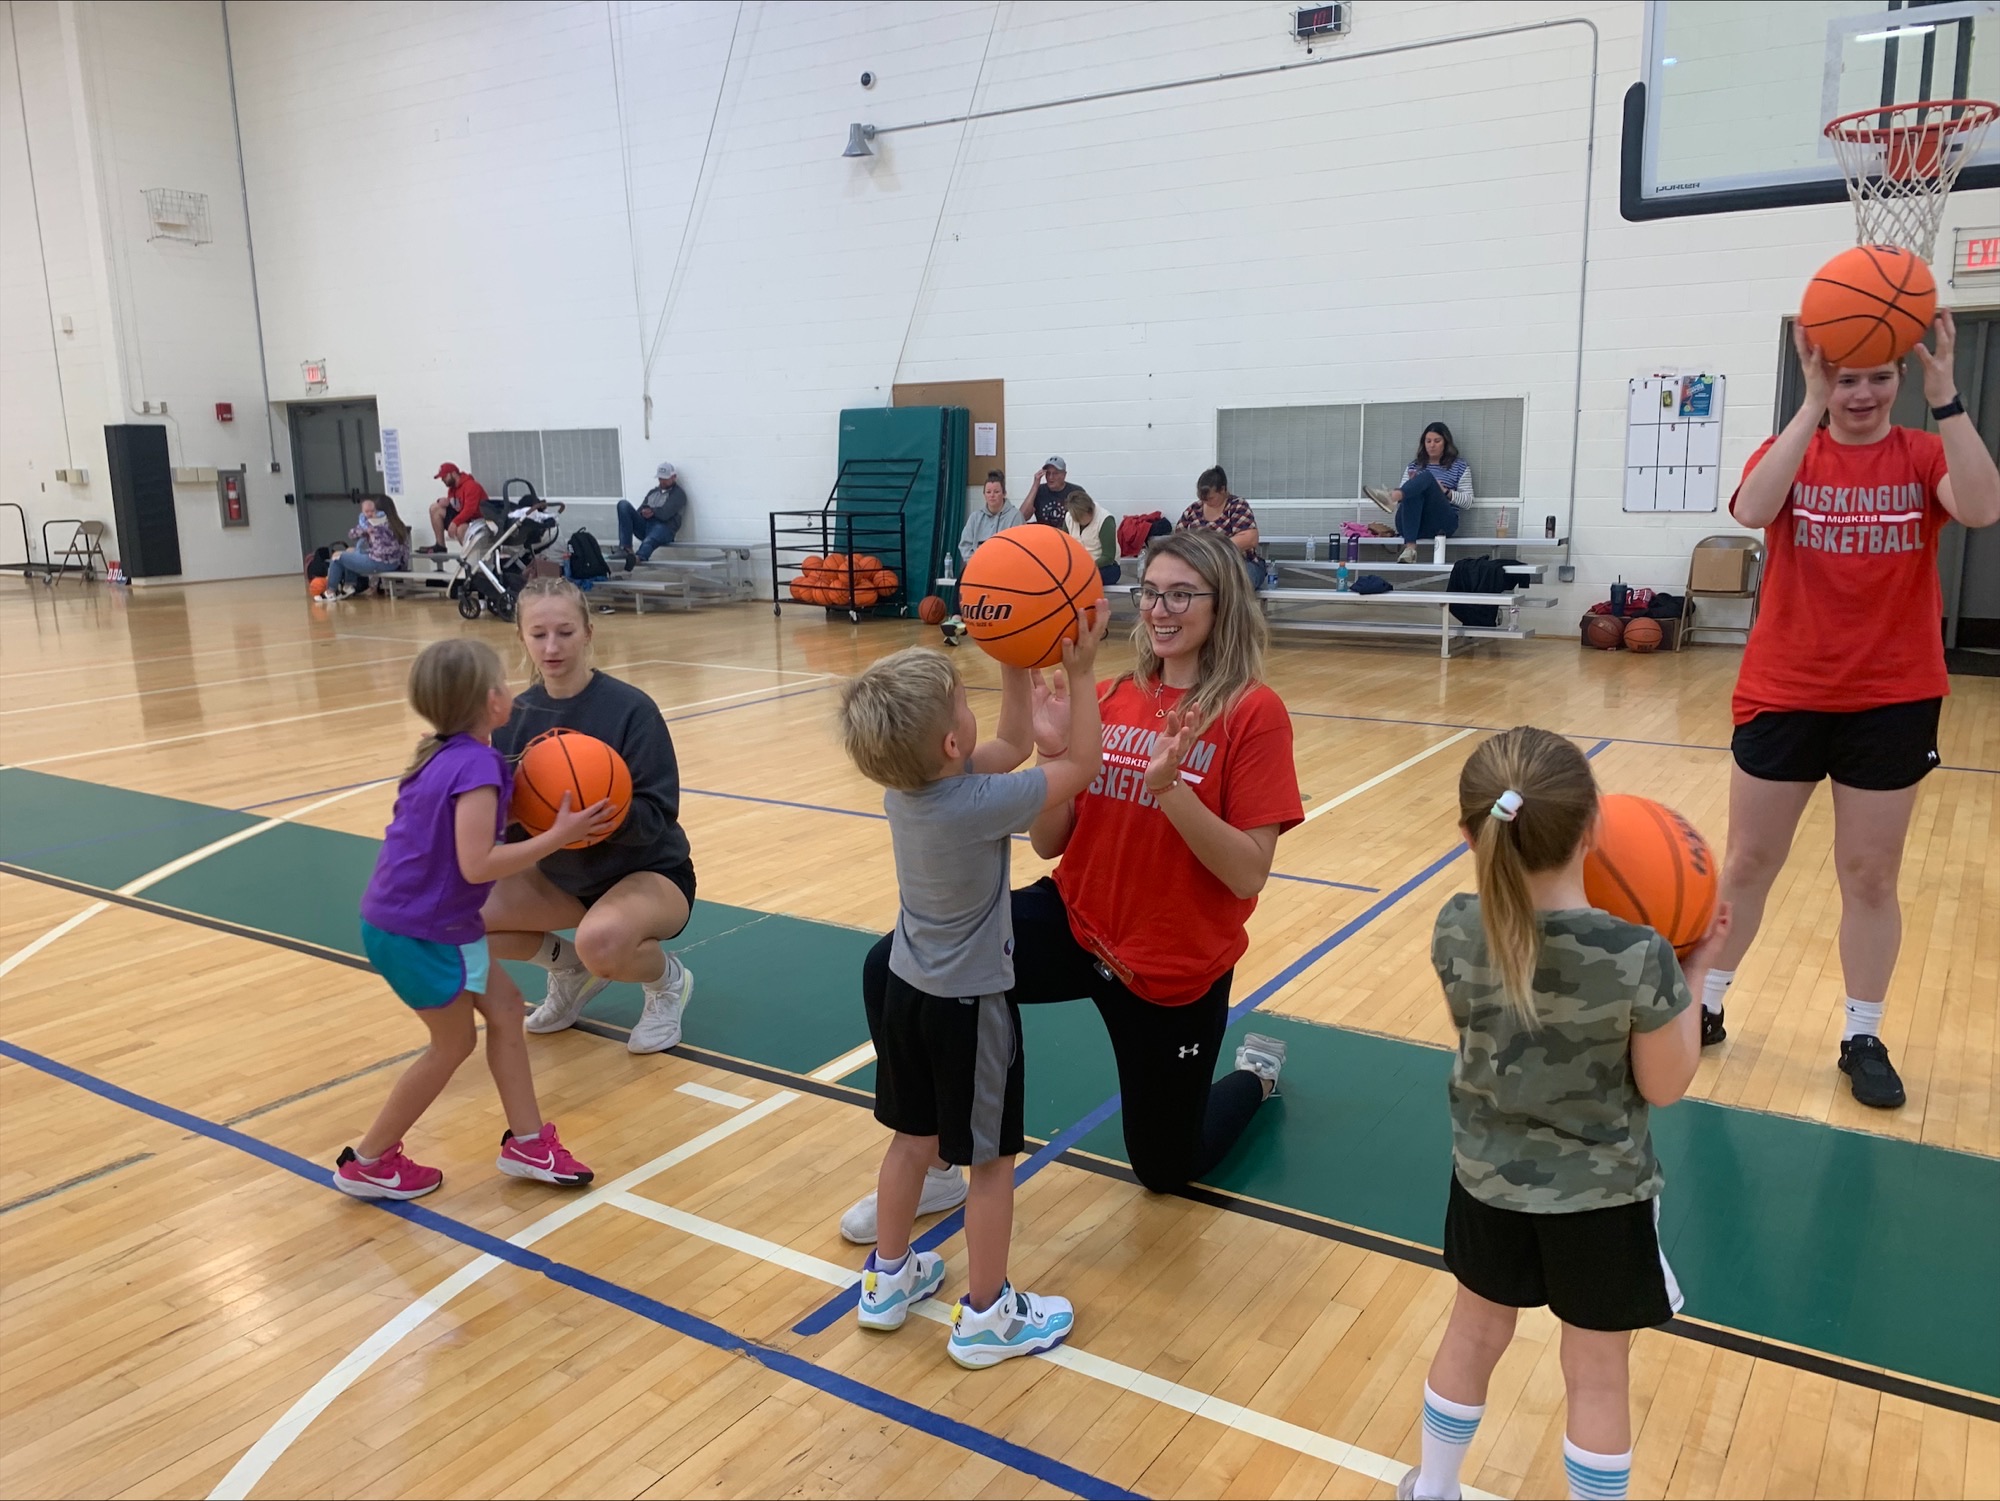 Children with basketballs